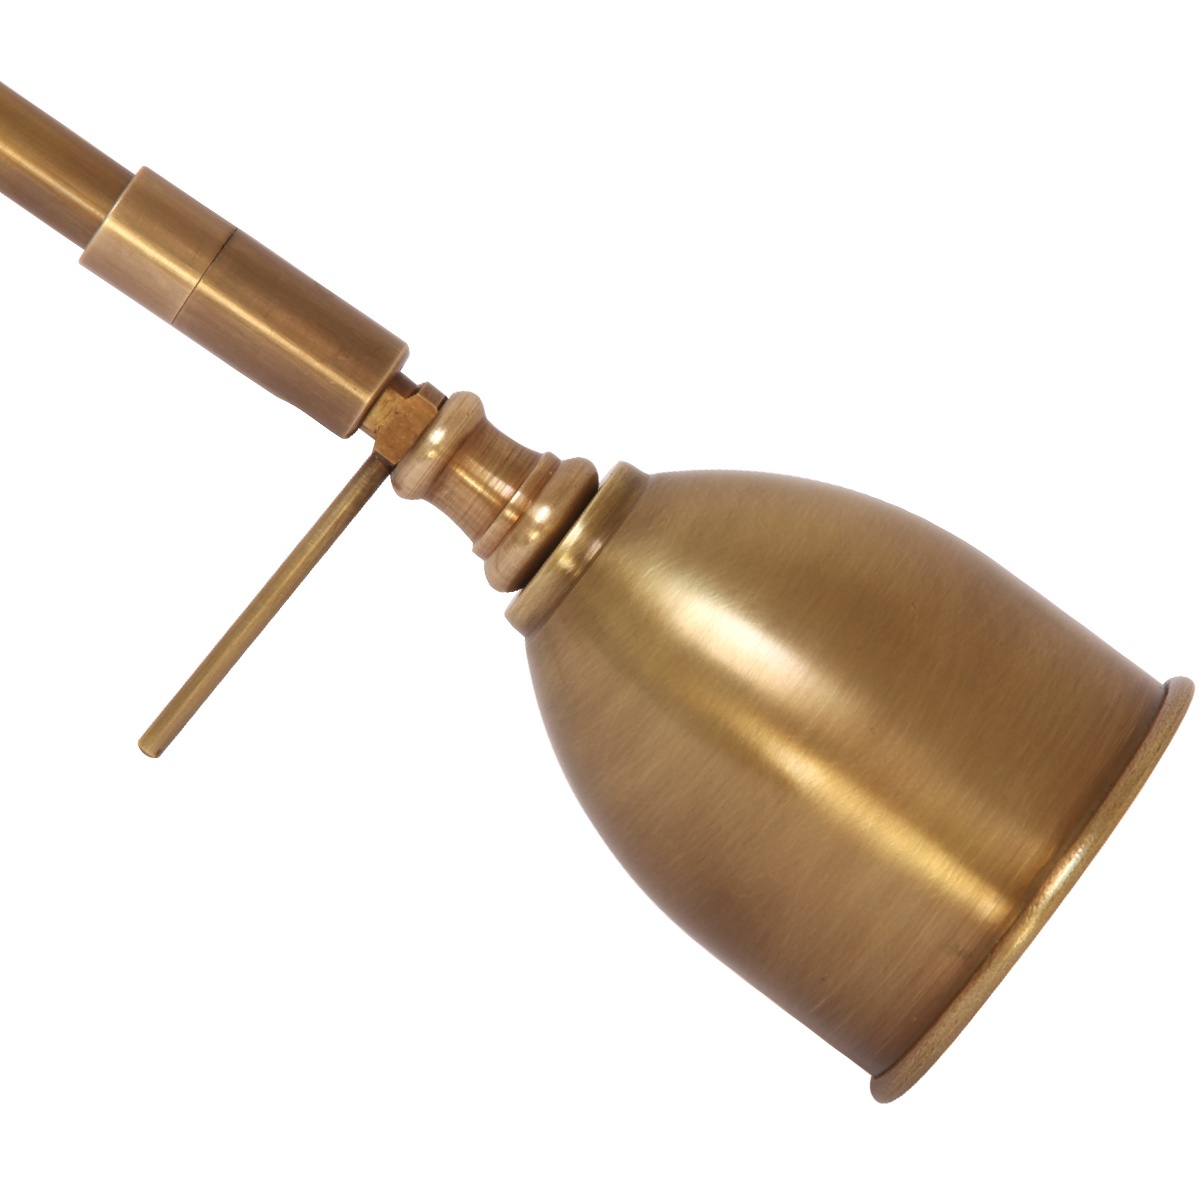 Kleine Gelenk-Wandlampe mit Messingschirmchen: Der kleine Schirm der Gelenklampe mit nur 5,5 cm Durchmesser